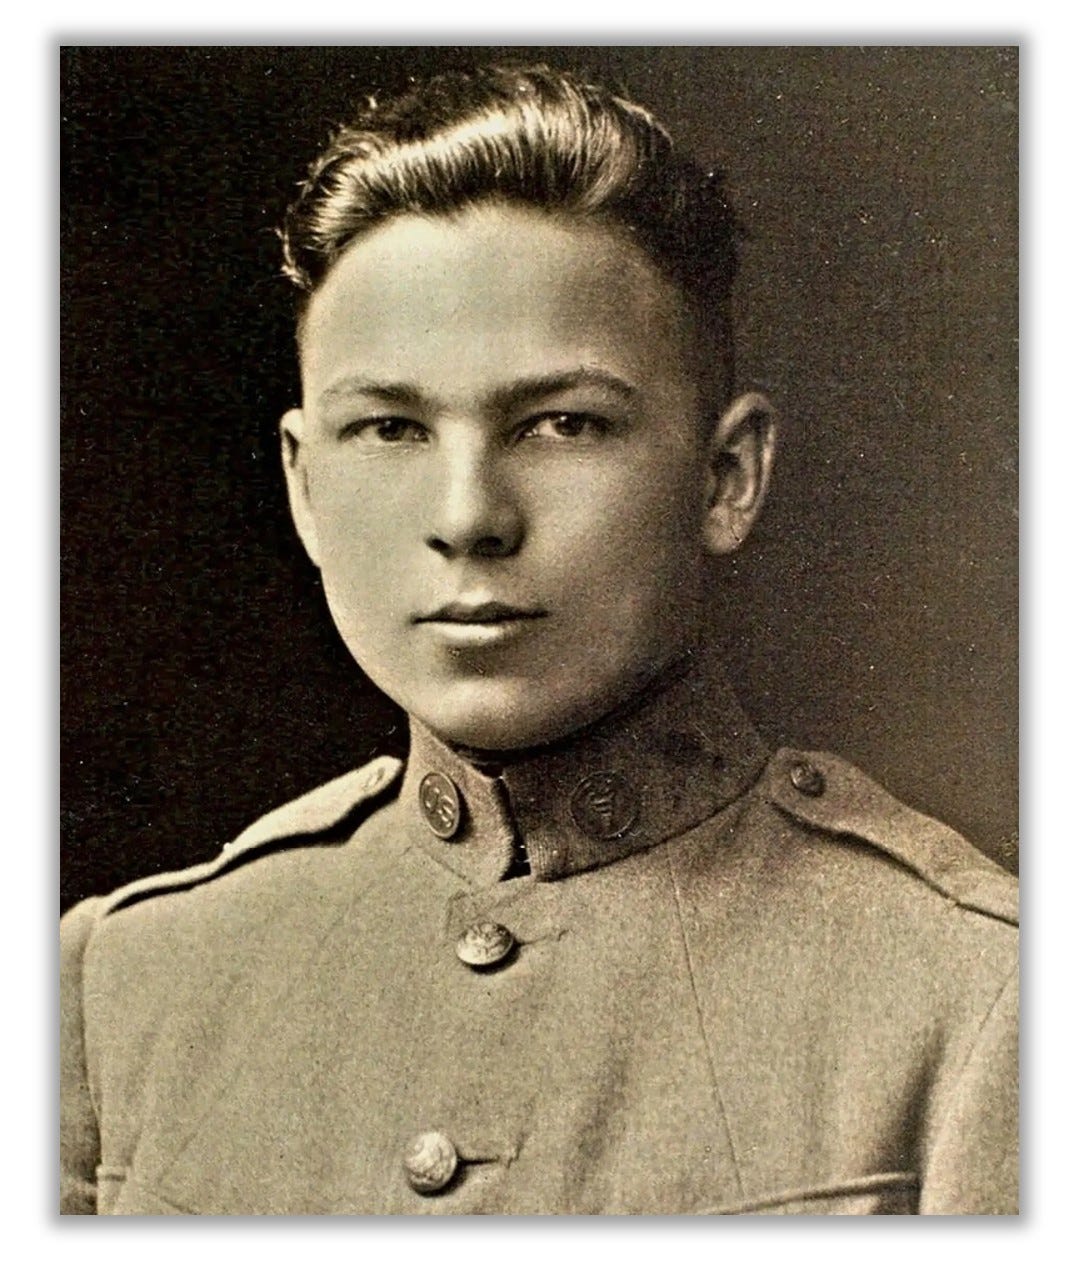 Headshot of Buckles, in uniform.